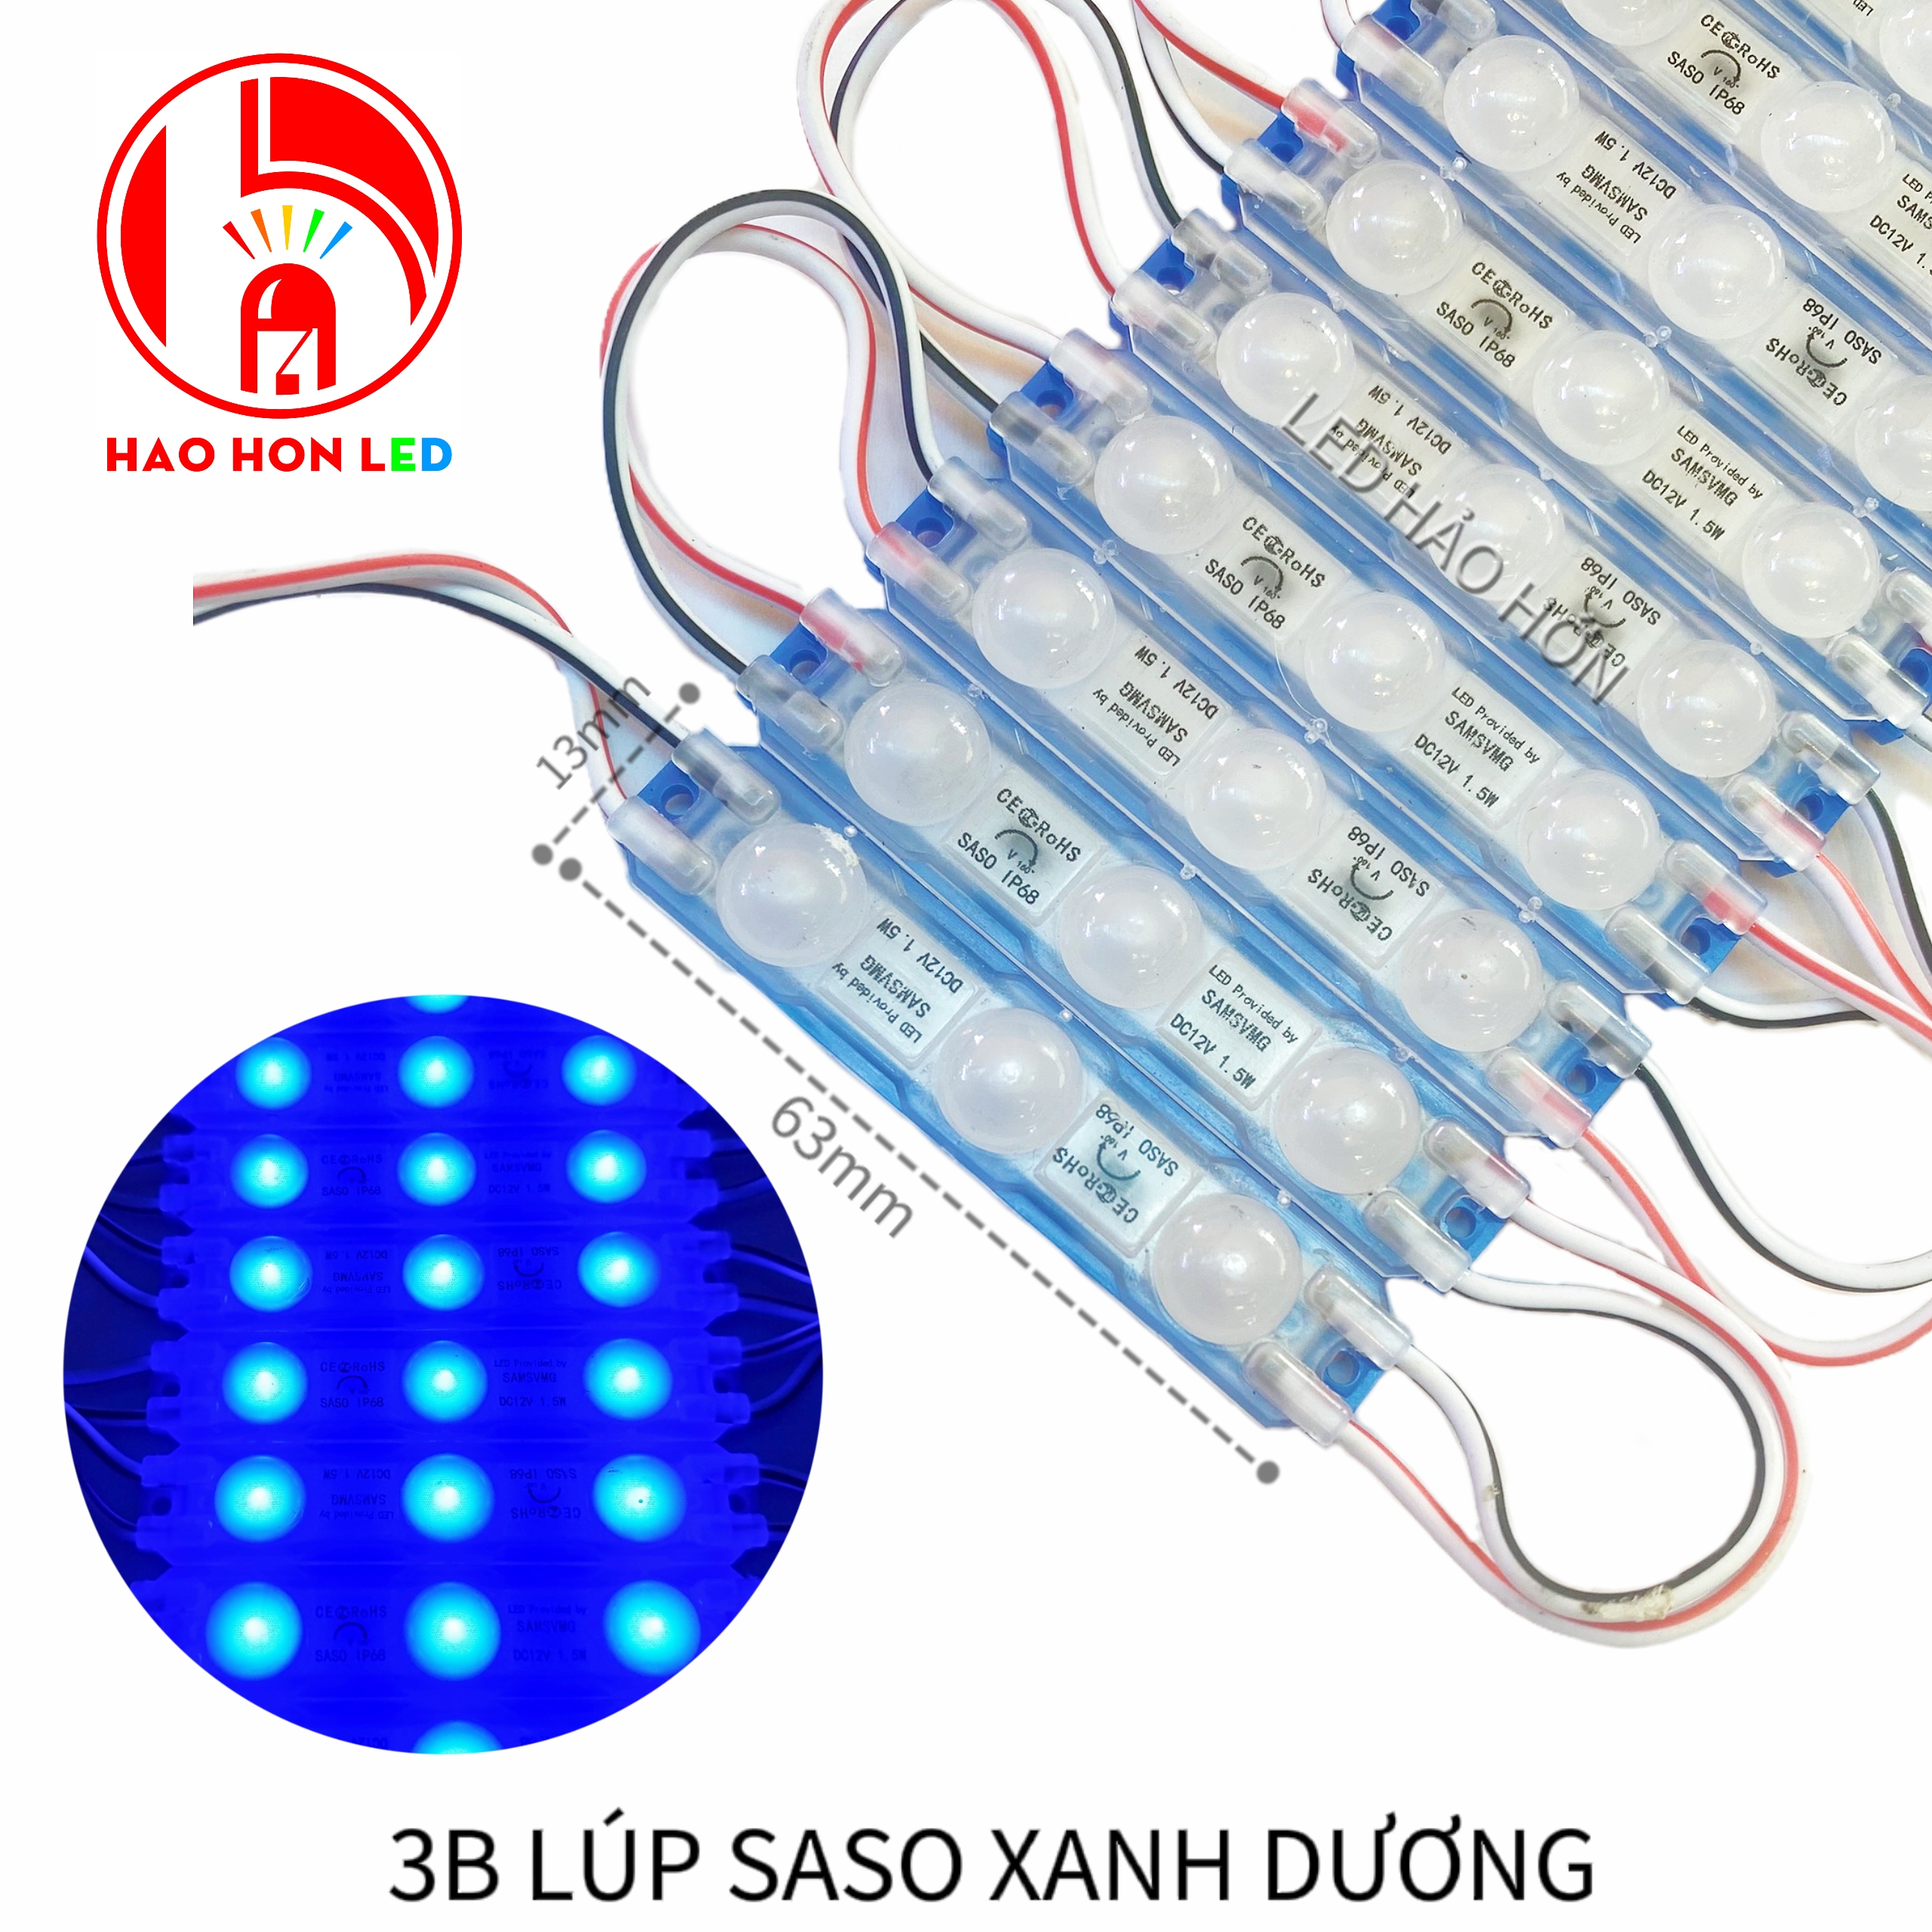 LED HẮT 3B LÚP SASO XANH DƯƠNG 6013